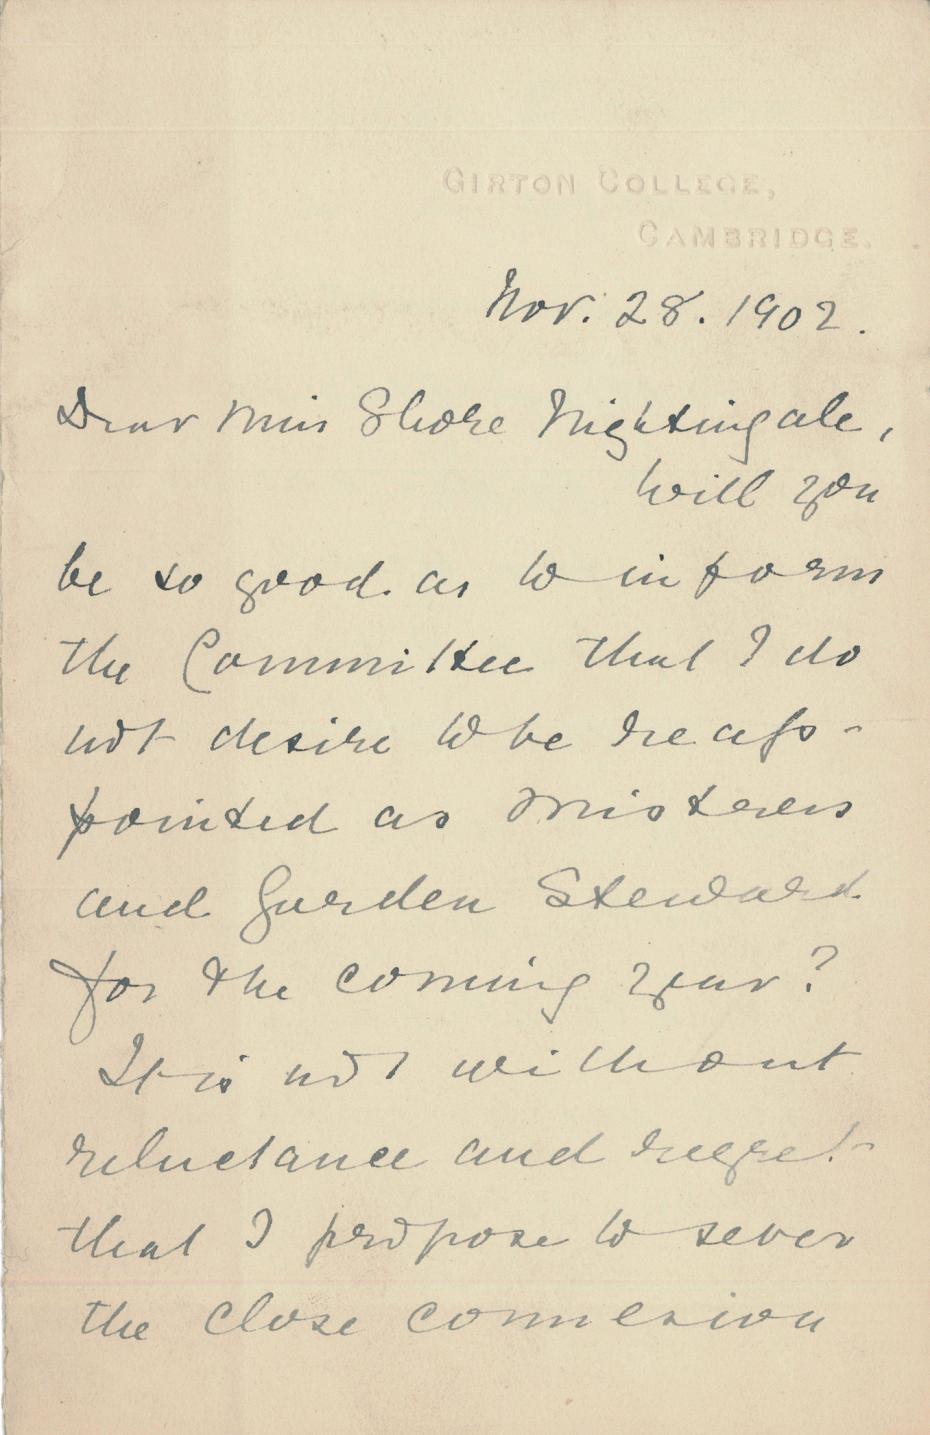 Elizabeth Welsh’s letter of resignation, 1902 (archive reference: GCGB 2/5/6/1/3pt).